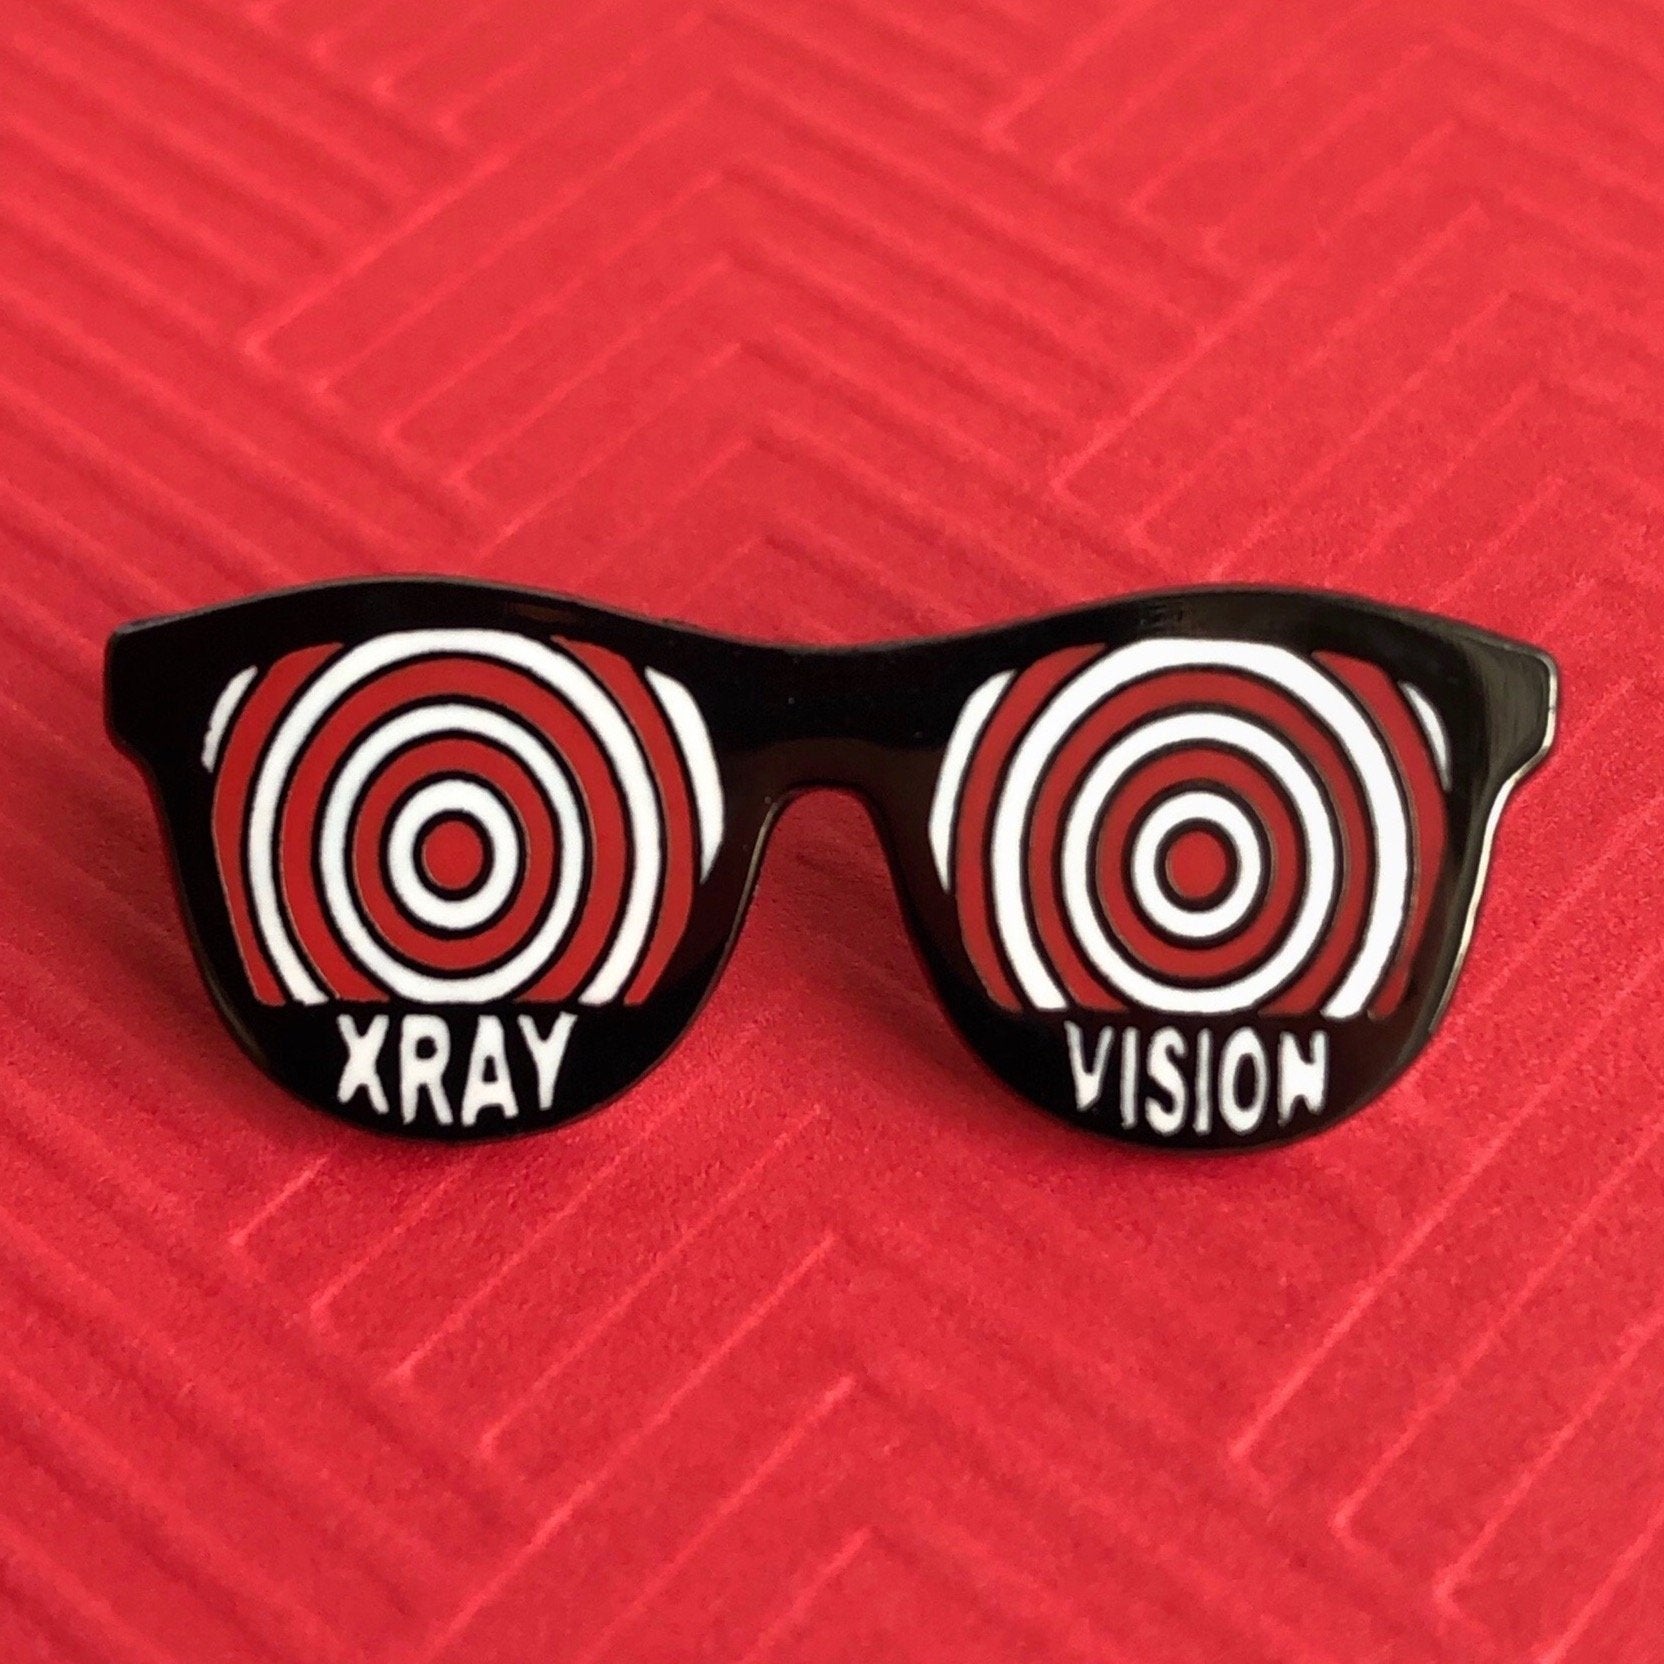 Xray Vision Pin - Rad Girl Creations